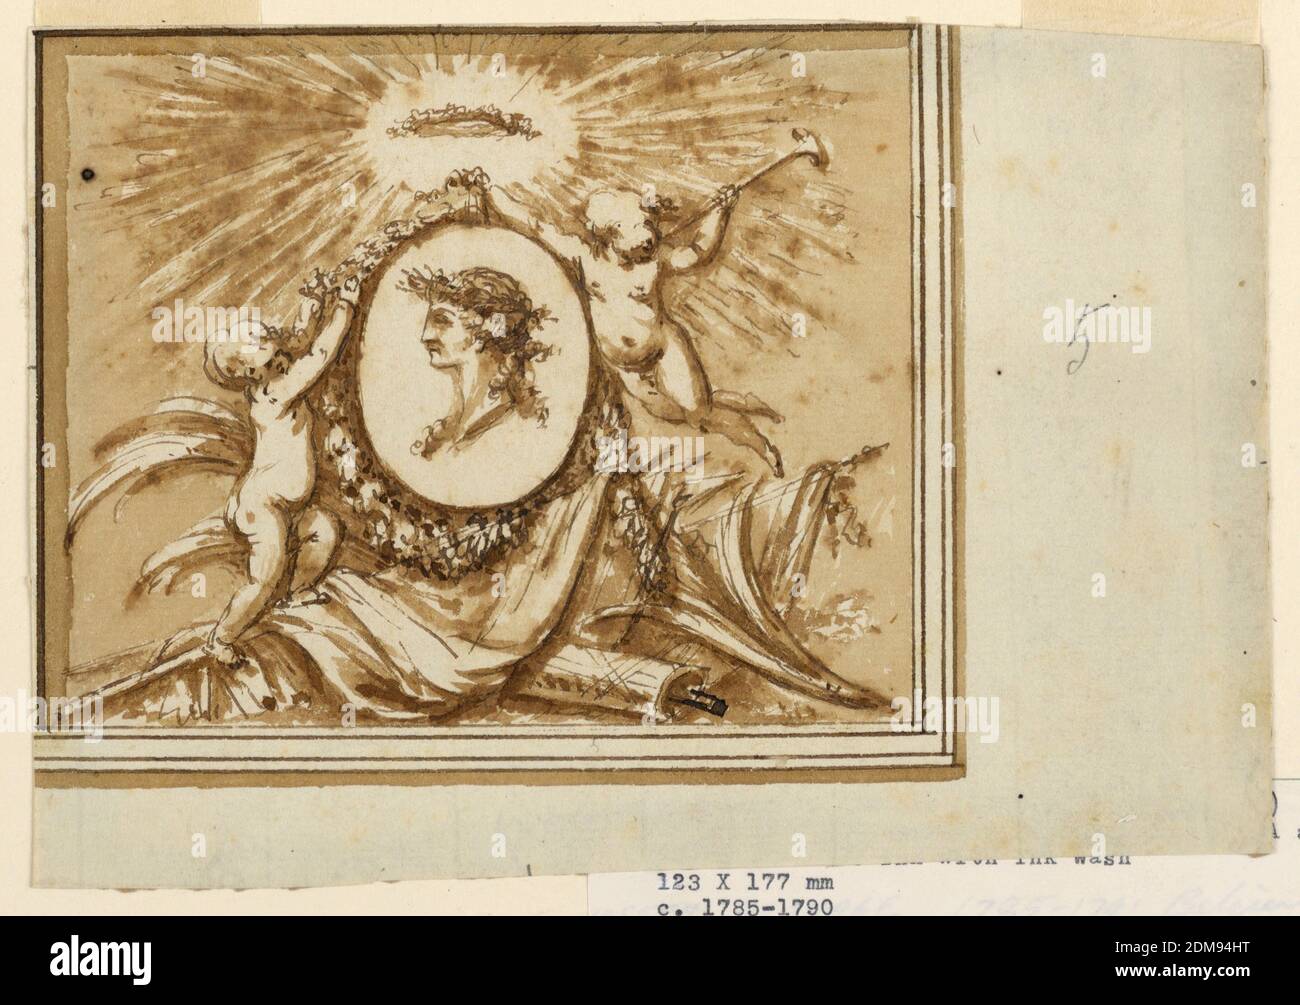 Design for an Overdoor, Piat Joseph Sauvage, französisch, 1744 - 1818, Stift und Tinte, Pinsel und Sepia wäscht, das Medaillon Porträt eines Prinzen wird von einem fliegenden Mädchen gehalten, das eine Trompete in der linken Hand hält. Ein anderes Mädchen ist mit einer Girlande beschäftigt, die das Medaillon umrahmt, über dem eine Krone in einem Glanz der Strahlen gezeigt wird. Eine Trophäe von Waffen an der Unterseite., Niederlande, 1785-1790, Zeichnung Stockfoto